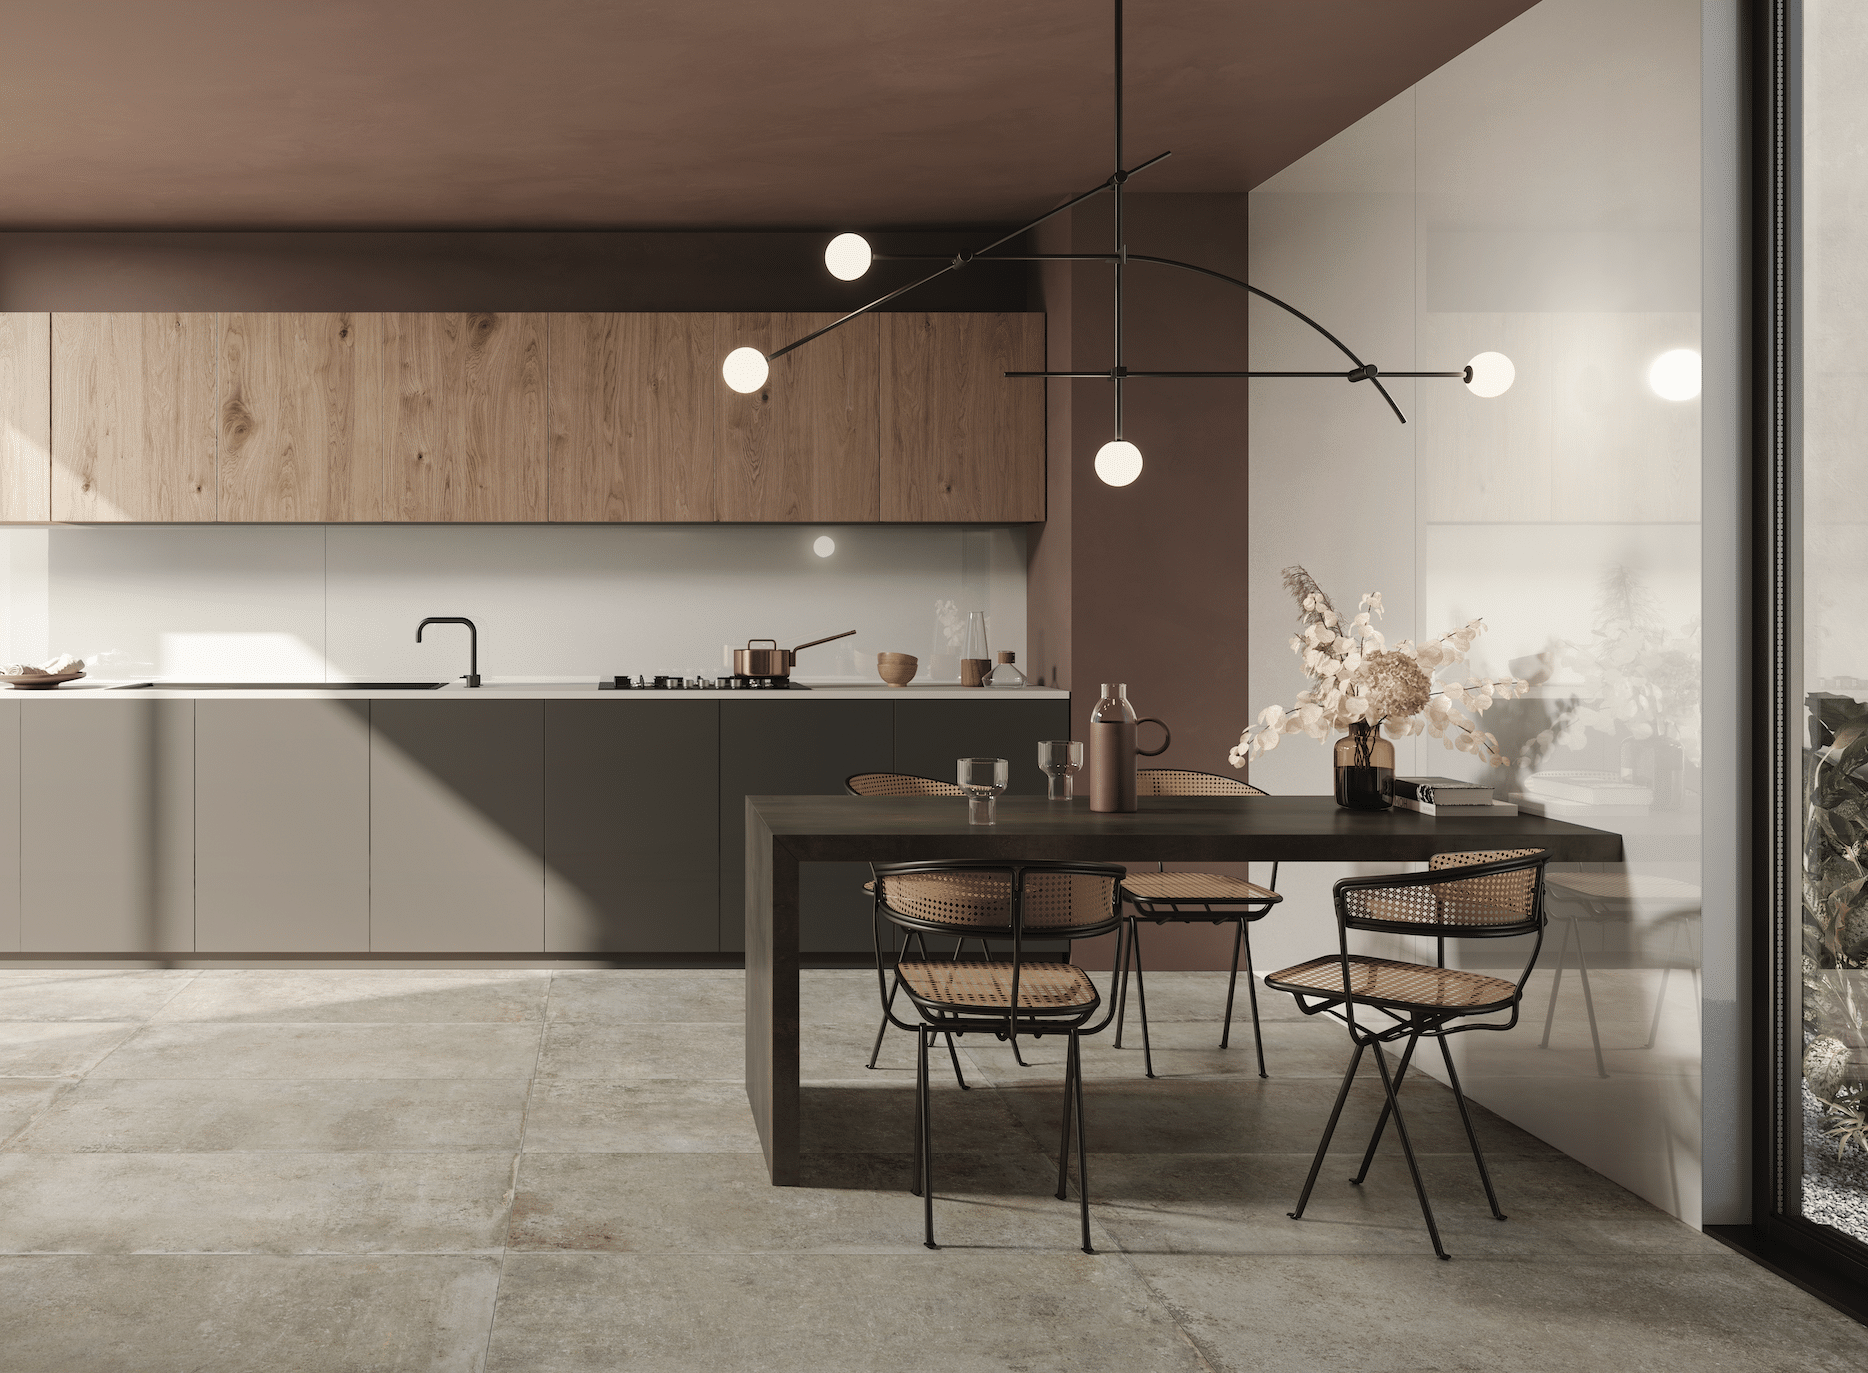 C. Bergmann zeigt eine Küche mit grauer Küchenzeile, einen Hängeschrank aus Holz an der Wand und mit einem dunklen Esstisch, Stühlen aus Materialmix und einer modernen Hängelampe von Flaviker.